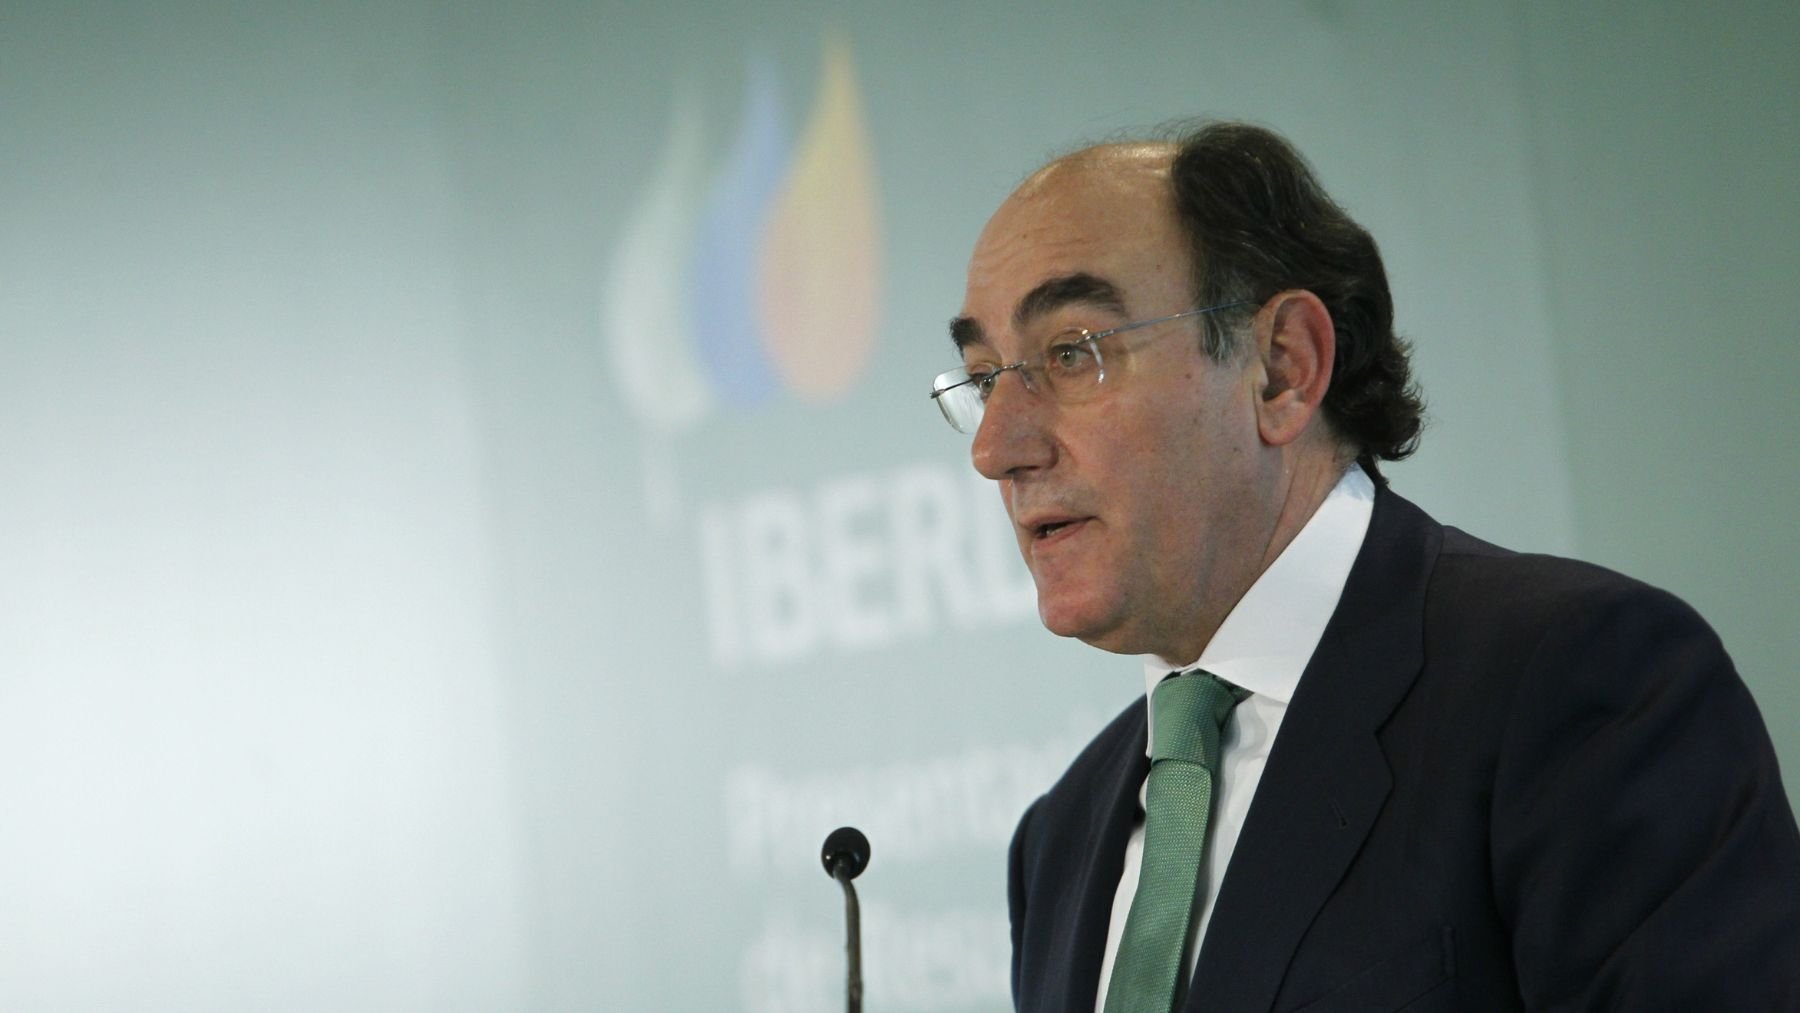 Ignacio Sánchez Galán, presidente de Iberdrola.